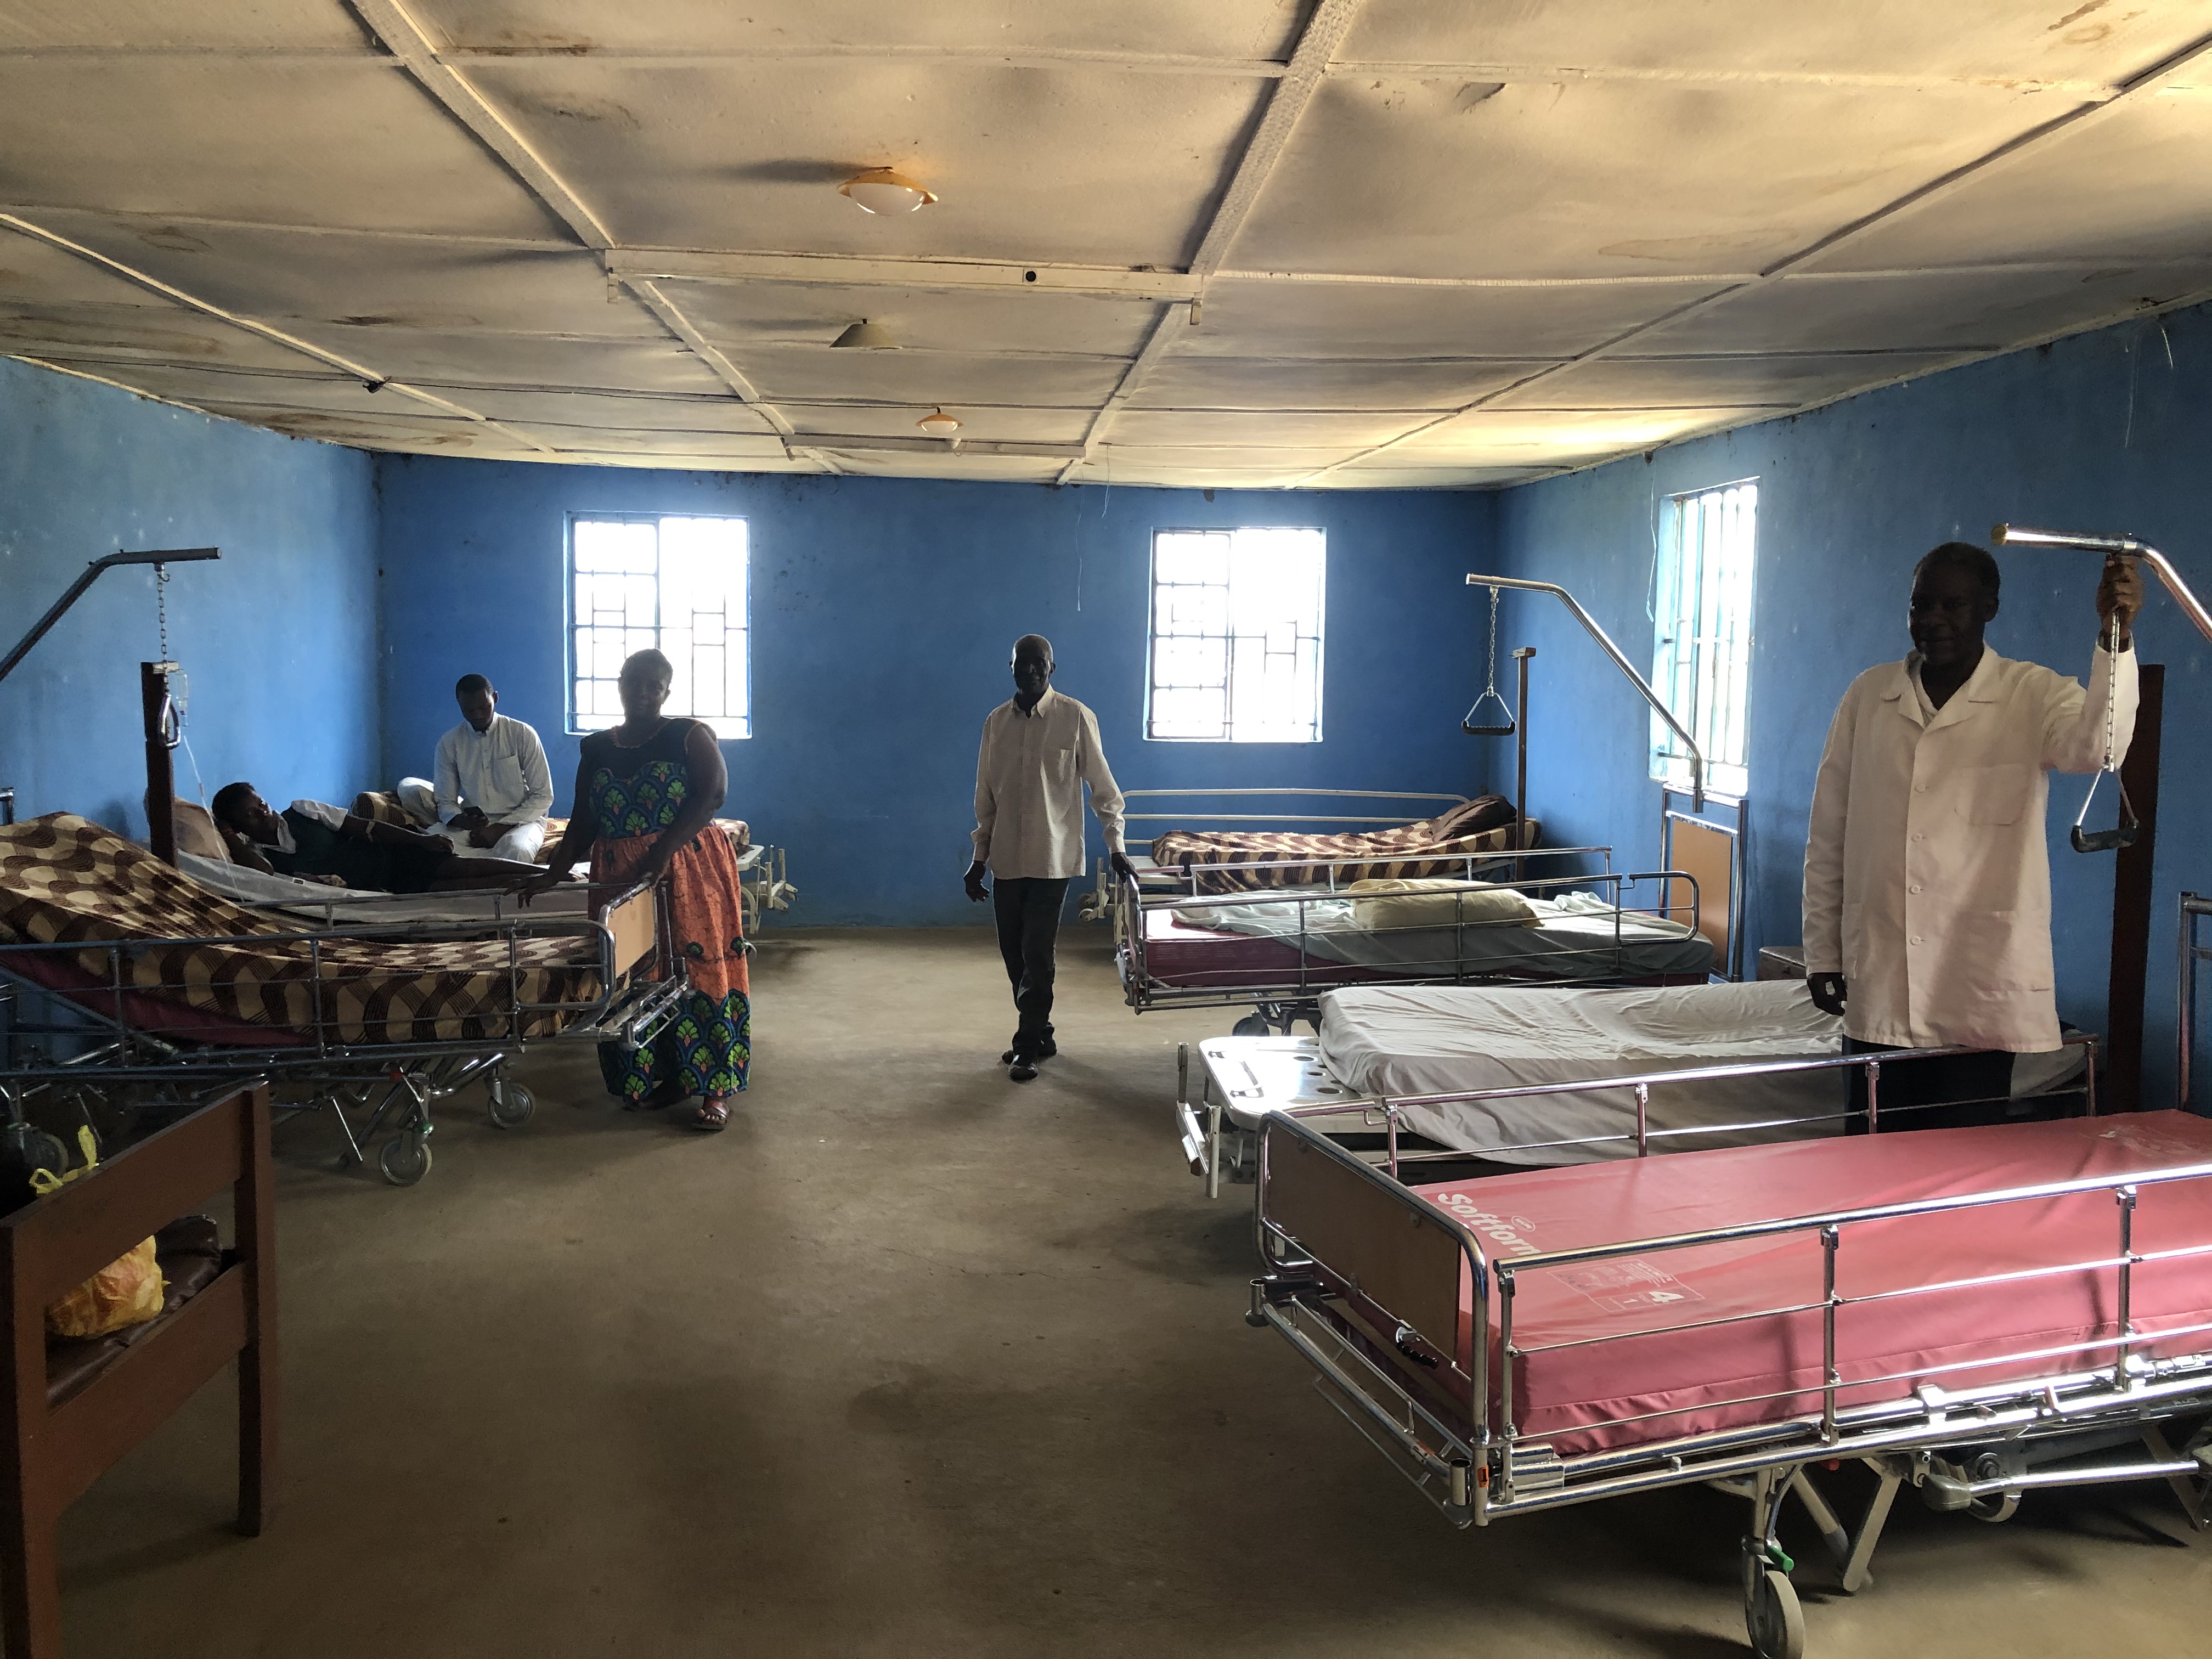 Aurora donates 4 hospital beds to Brama Community Hospital